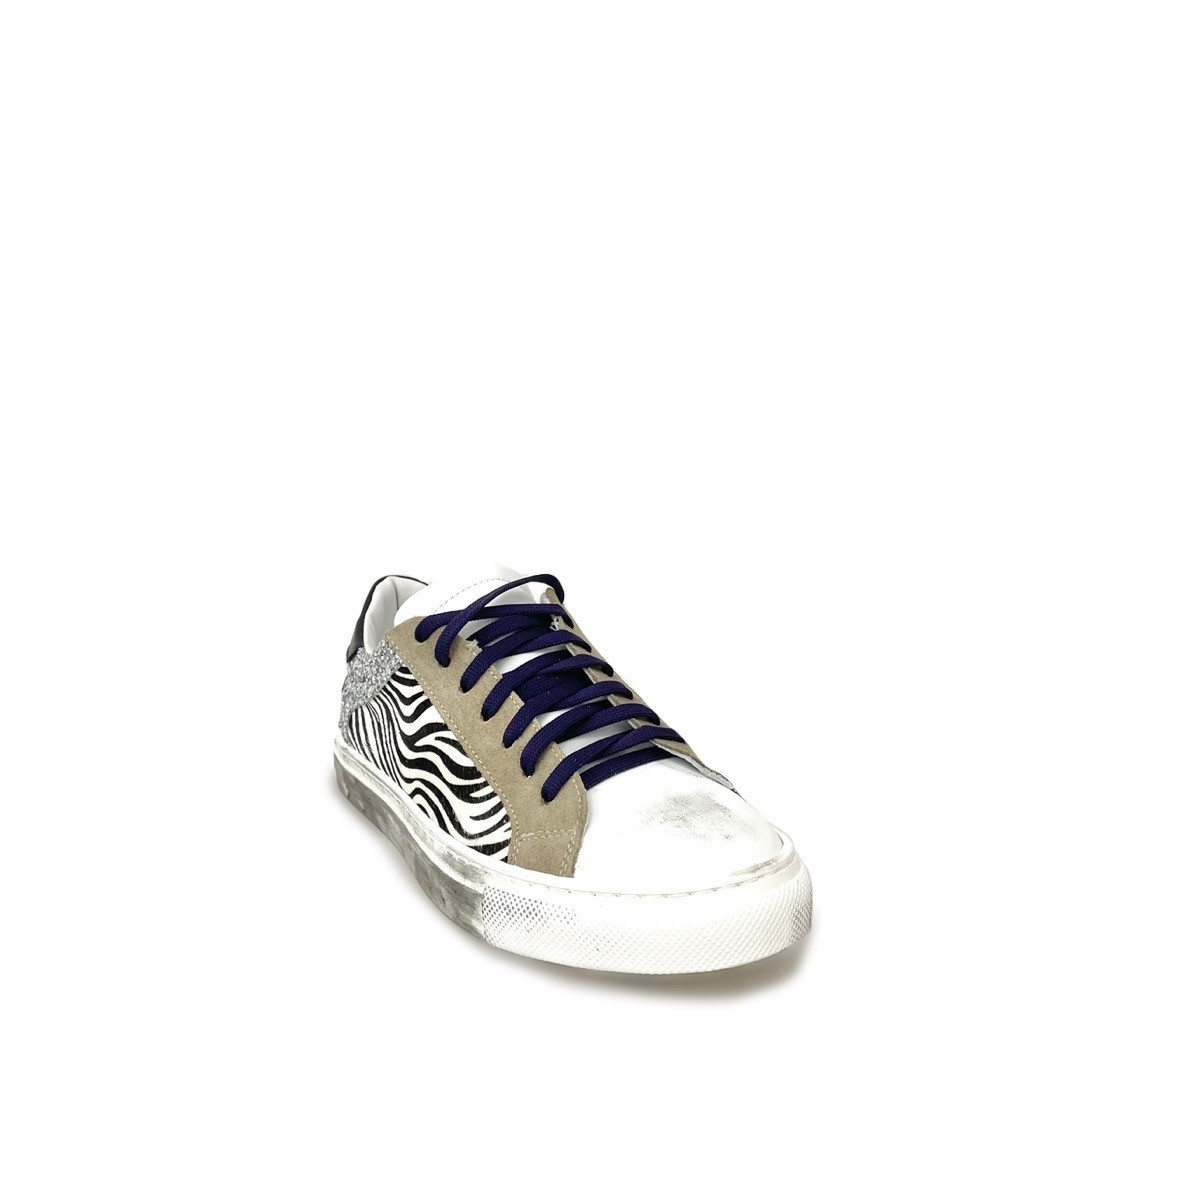 Sneakers zebrato viola glitter